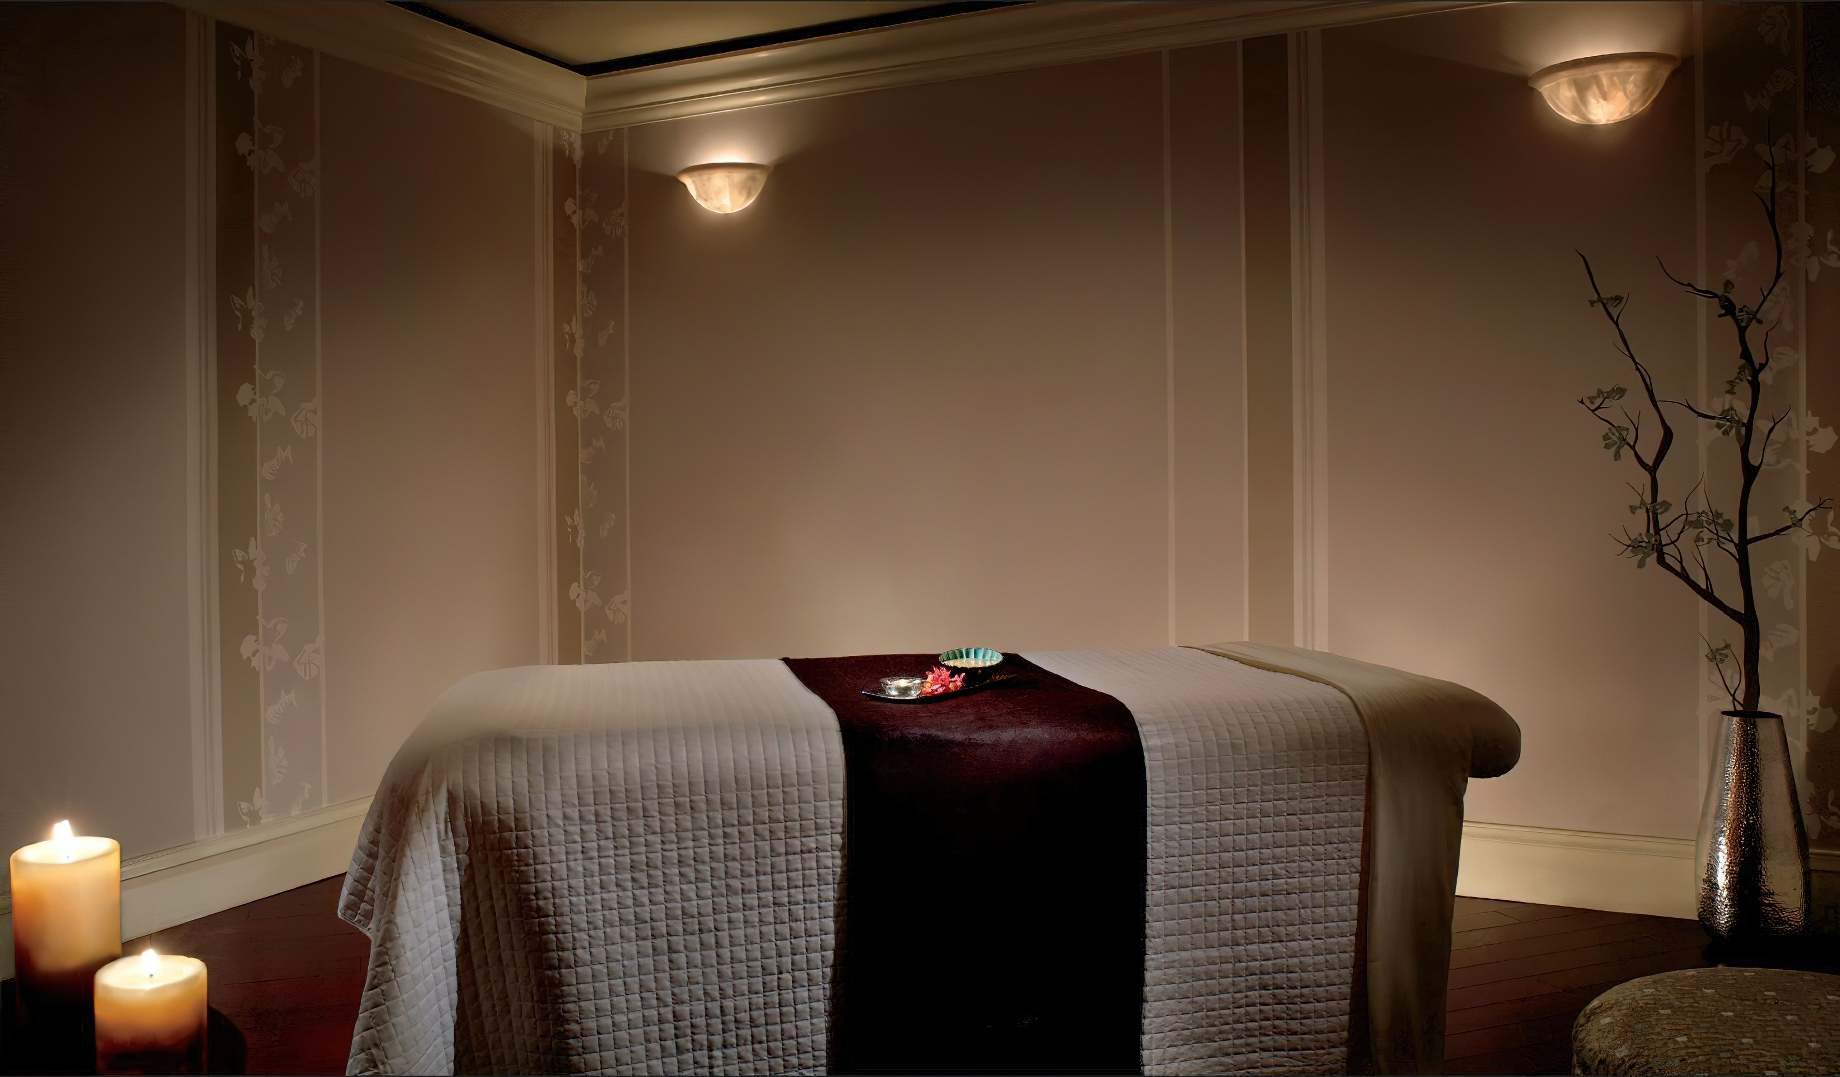 The Ritz-Carlton Coconut Grove, Miami Hotel – Miami, FL, USA – Spa Treatment Room